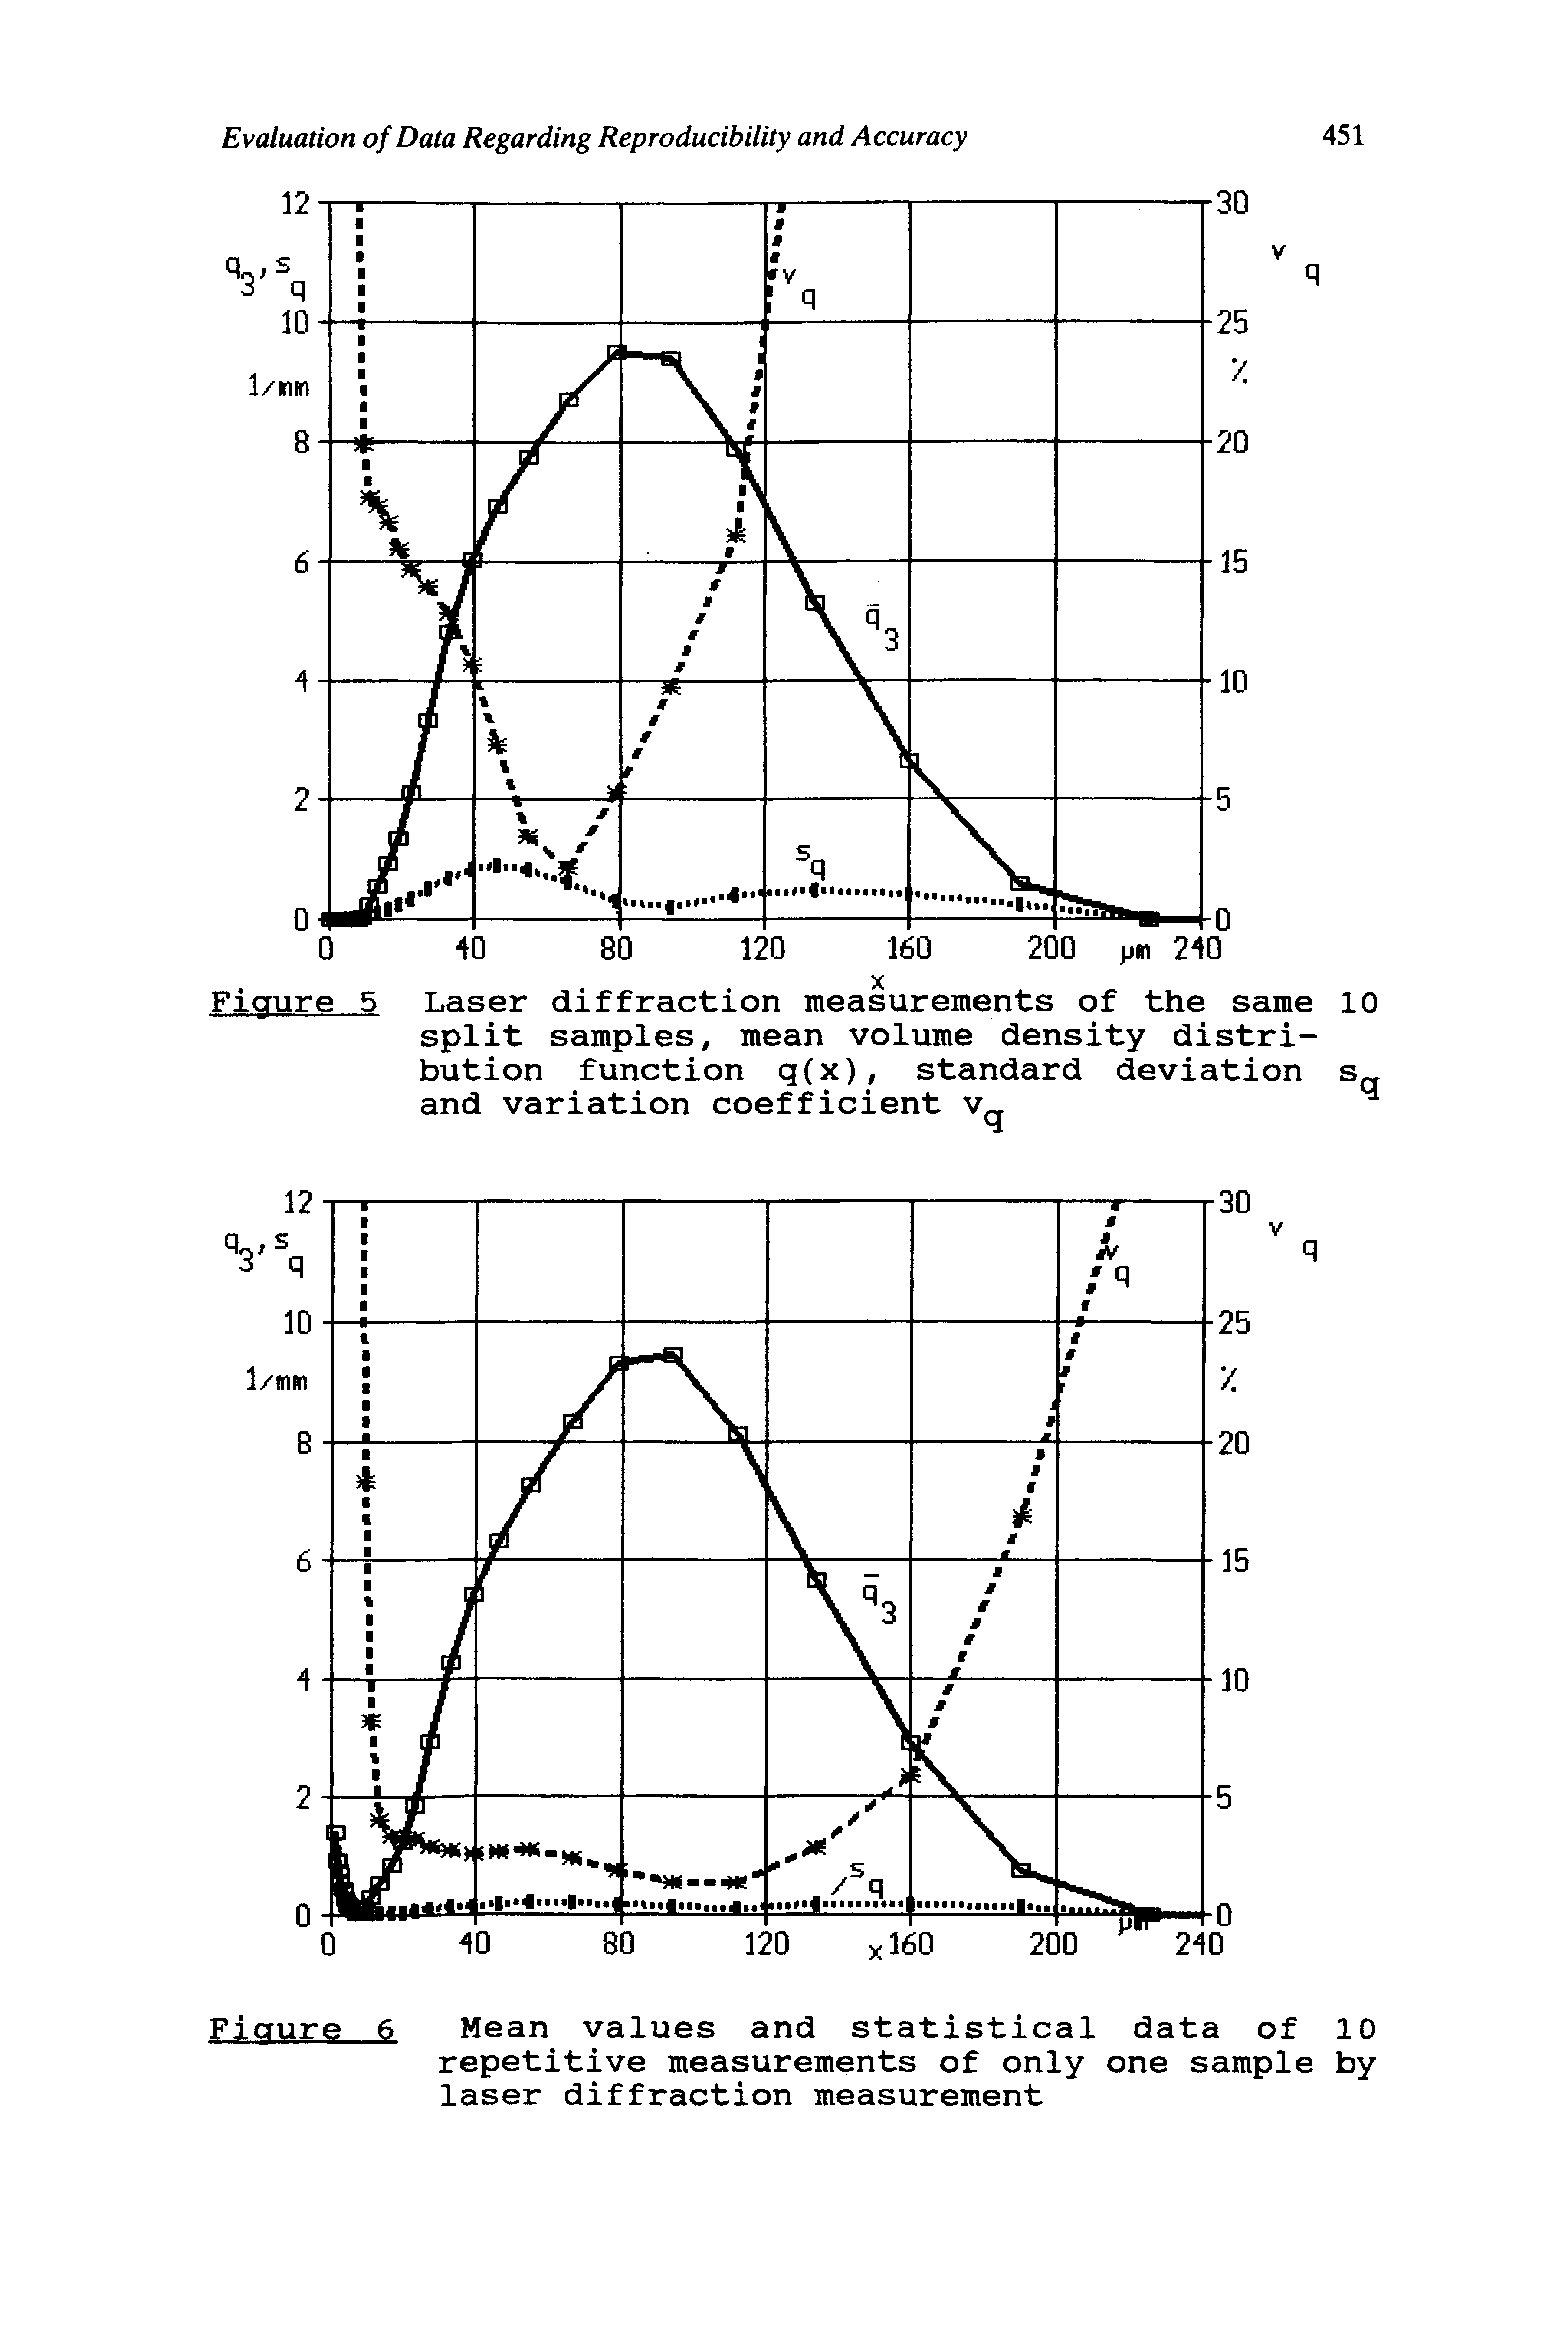 Figure 5 Laser diffraction measurements of the same 10 split samples, mean volume density distribution function q(x), standard deviation s and variation coefficient v, ...